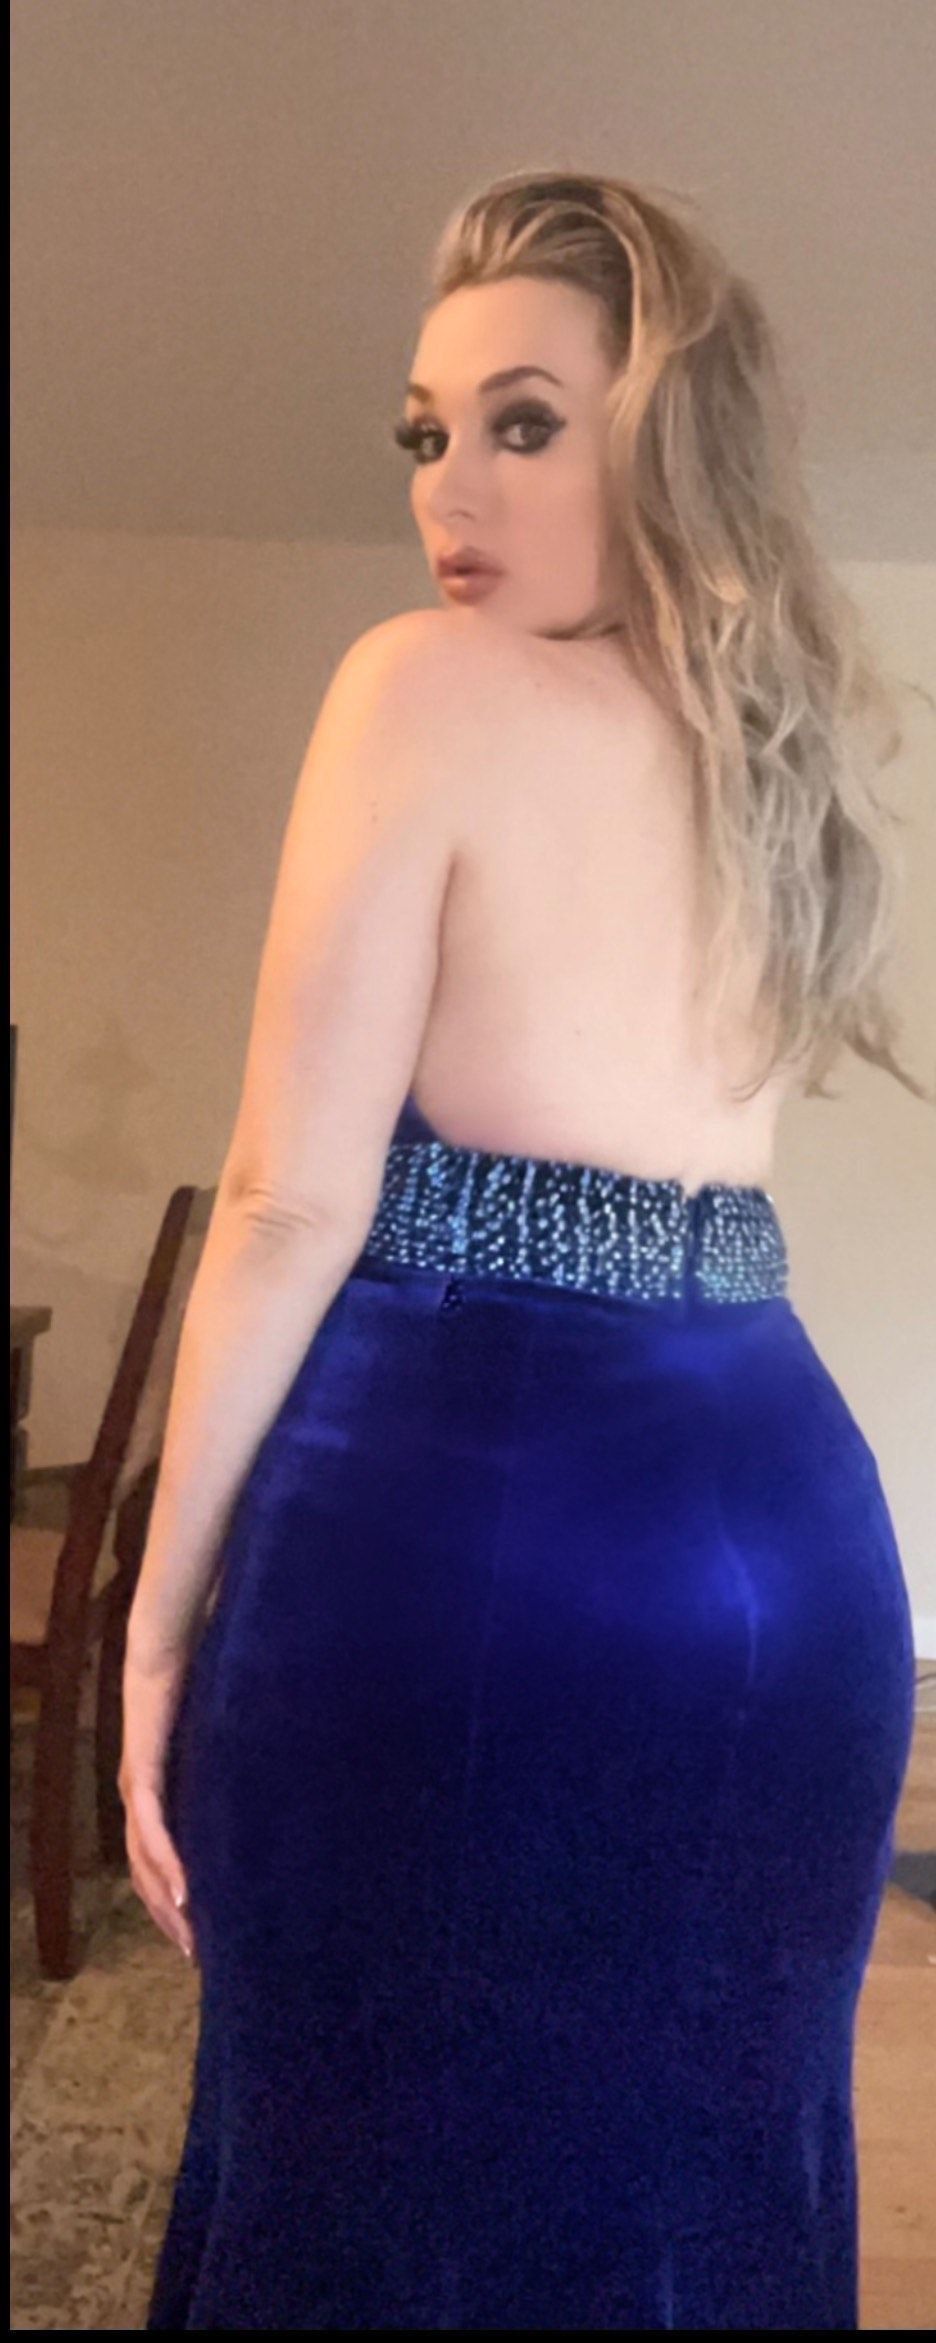 Jovani Size 6 Bridesmaid Halter Velvet Royal Blue Side Slit Dress on Queenly